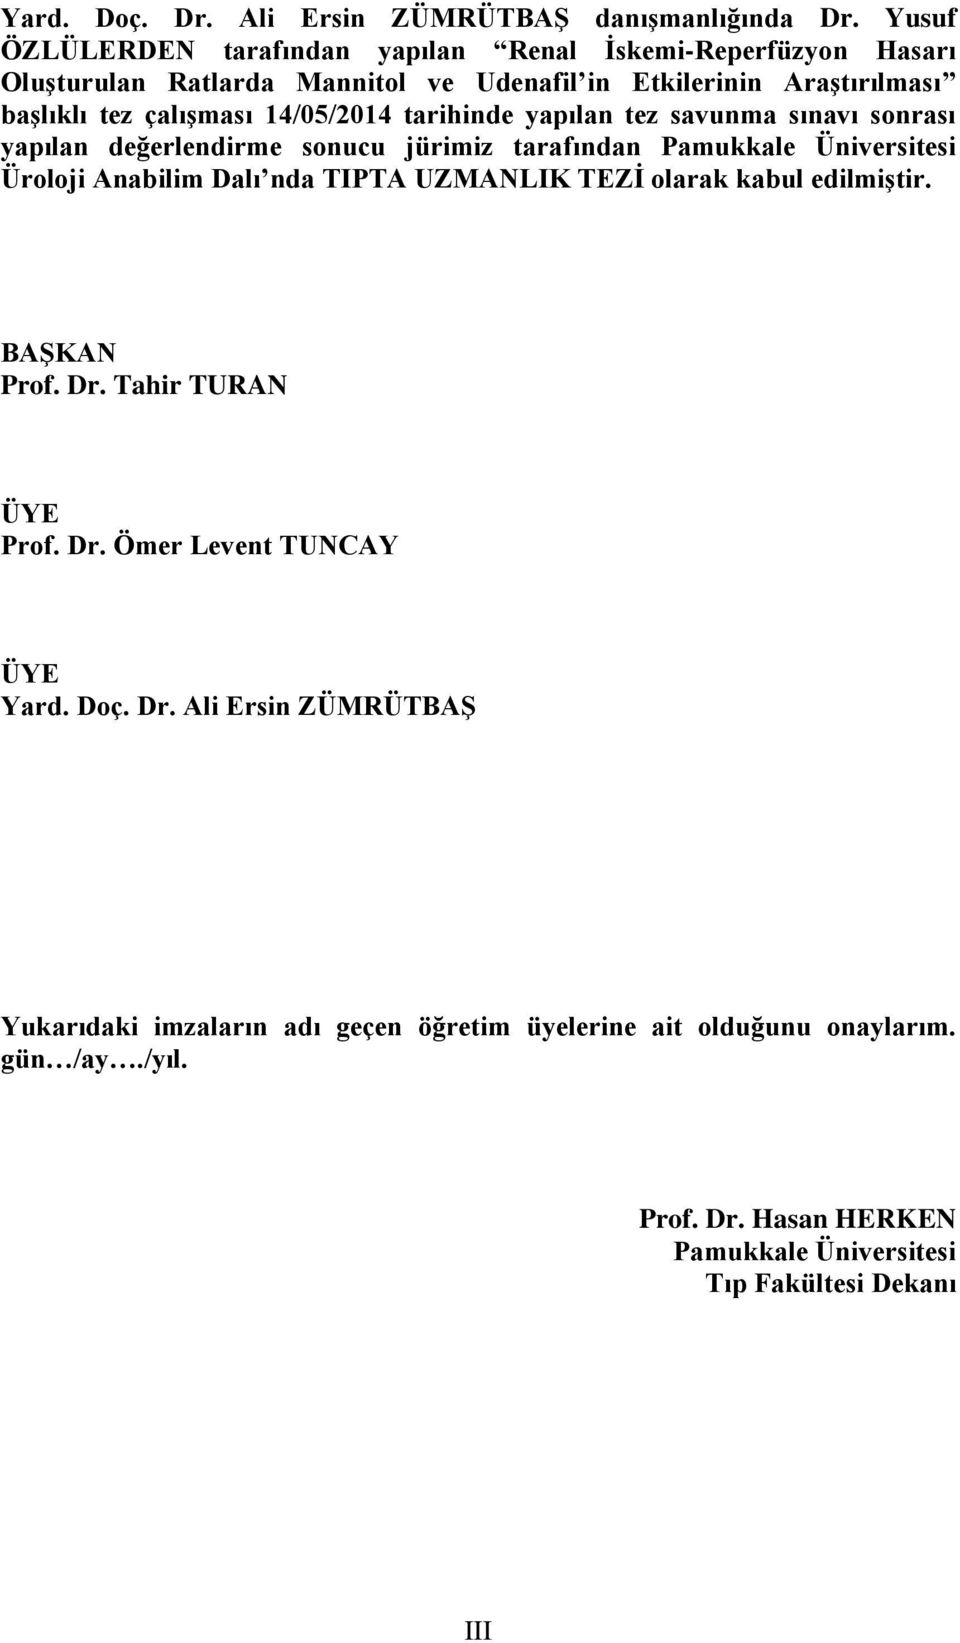 14/05/2014 tarihinde yapılan tez savunma sınavı sonrası yapılan değerlendirme sonucu jürimiz tarafından Pamukkale Üniversitesi Üroloji Anabilim Dalı nda TIPTA UZMANLIK